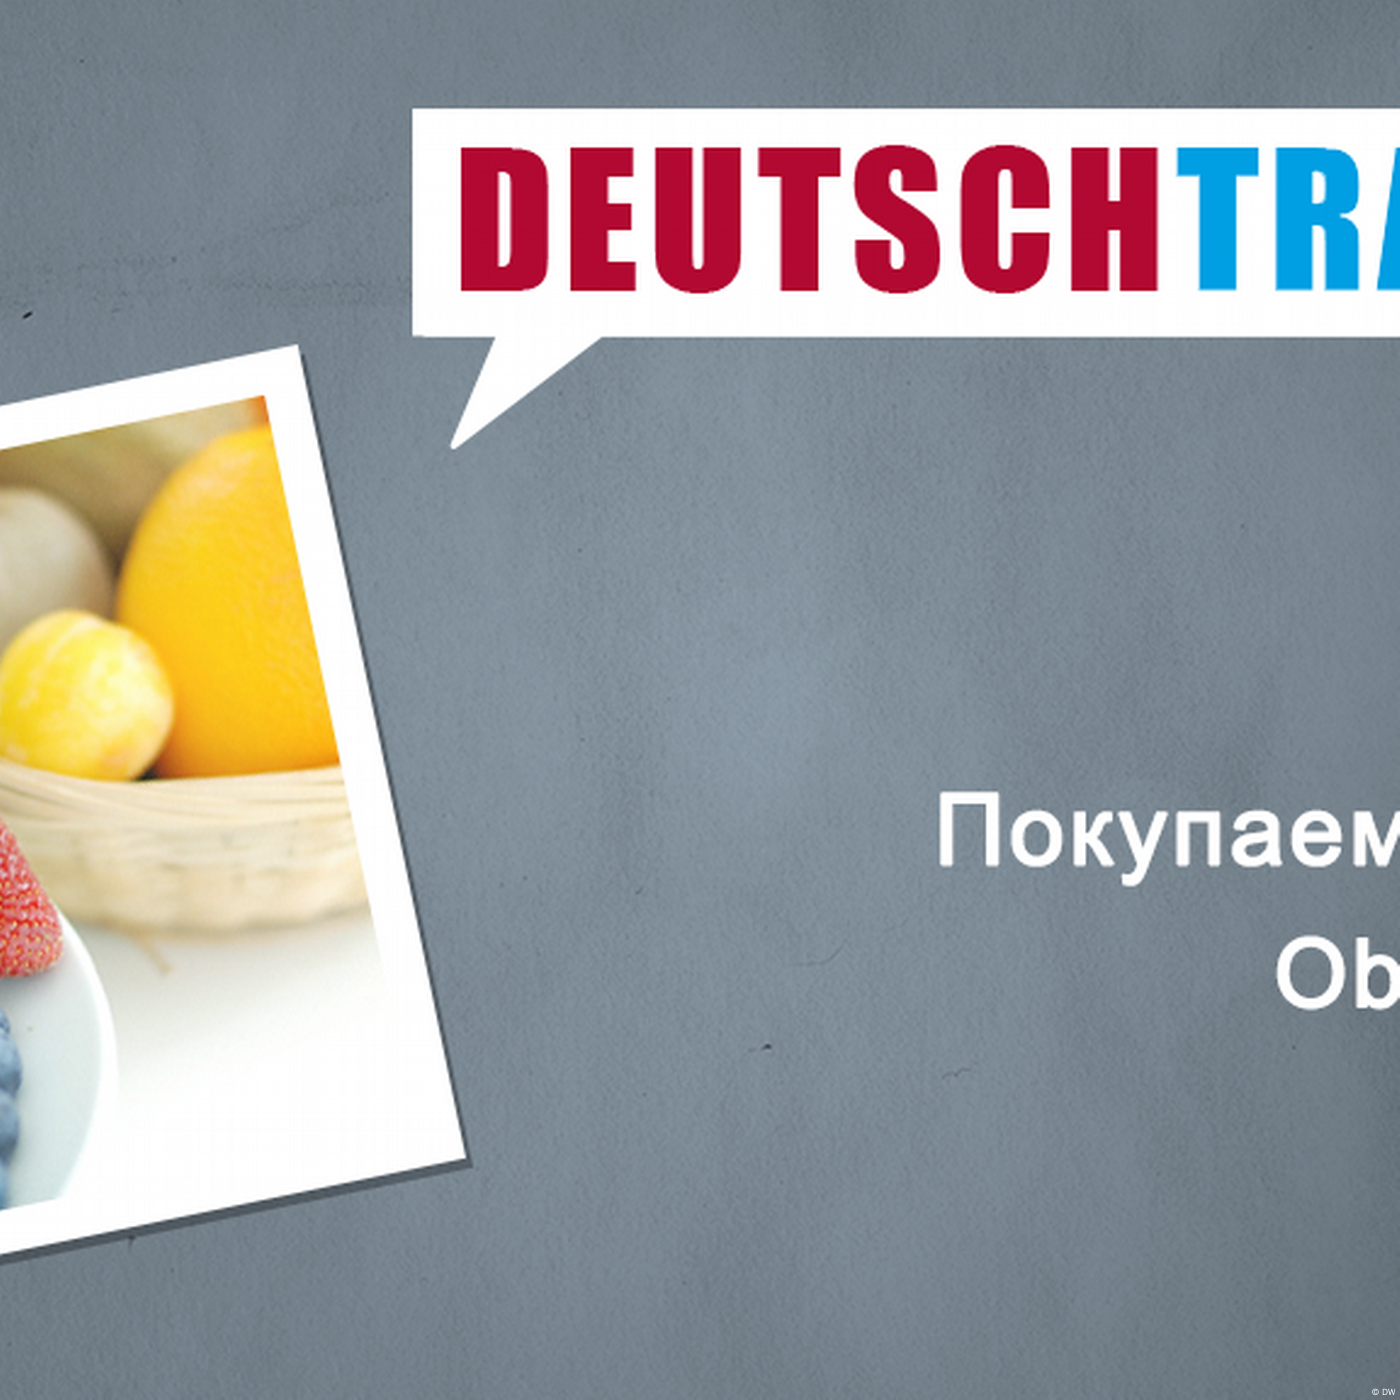 Deutschtrainer – 29 Покупаем фрукты